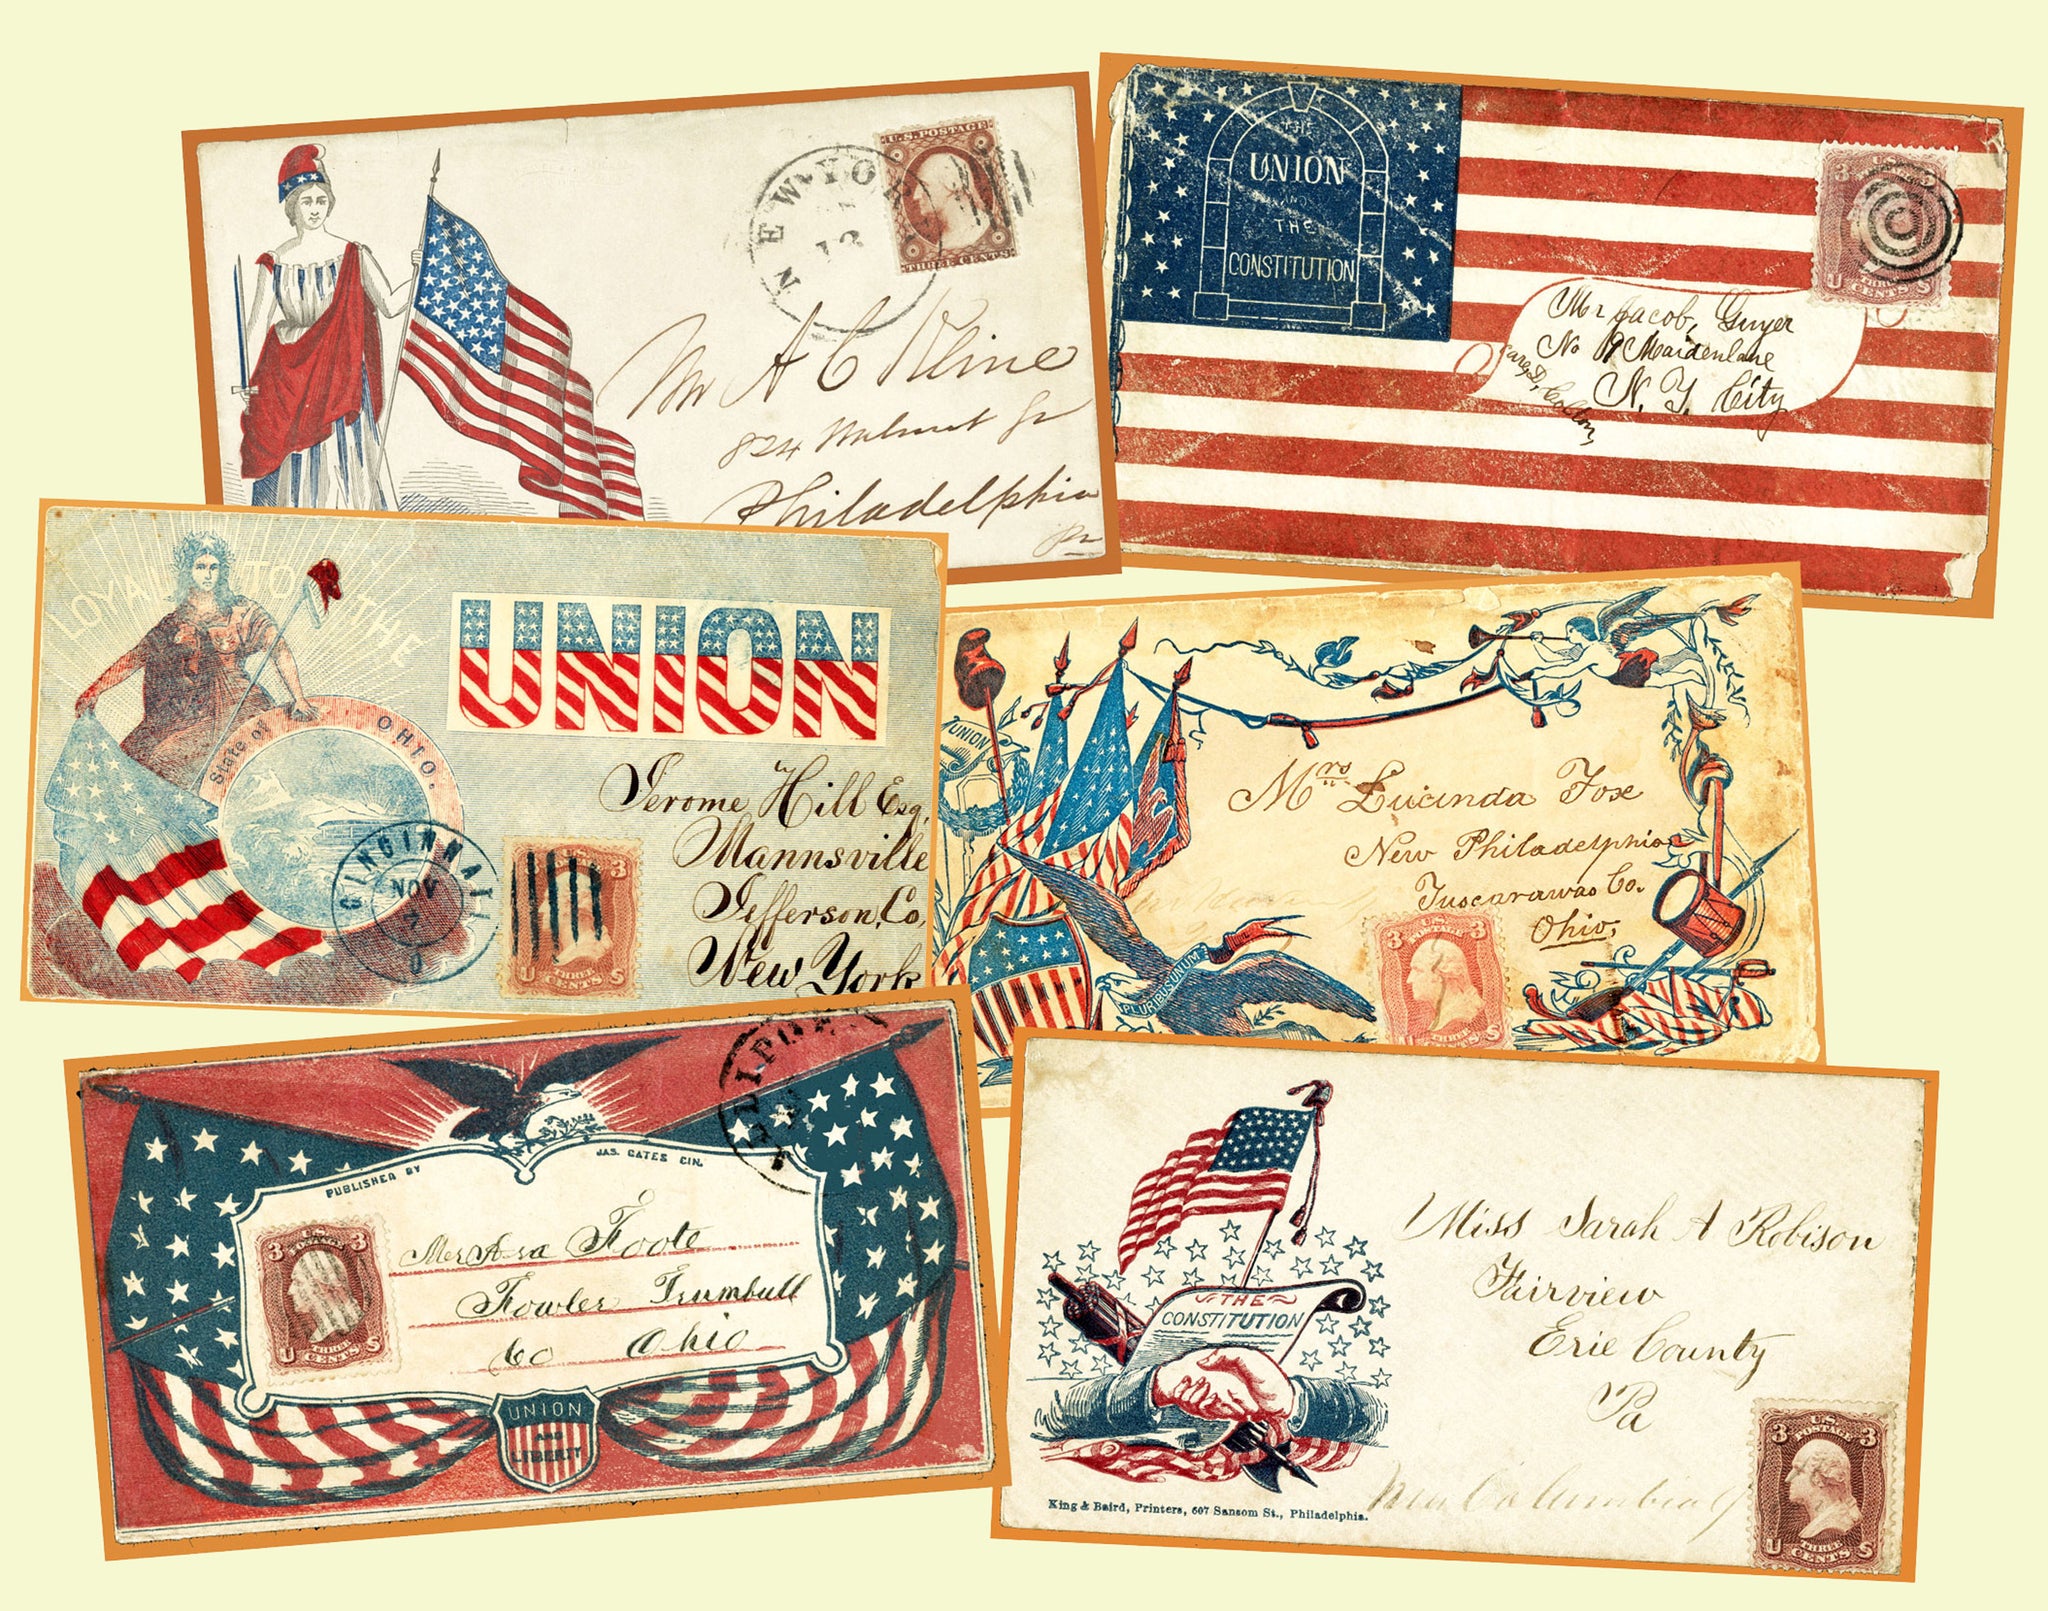 6 Antique Patriotic Envelope Stickers, Civil War Historical Letter Envelopes for Altered Arts, Card & Envelope Making or Decorations, 2P86